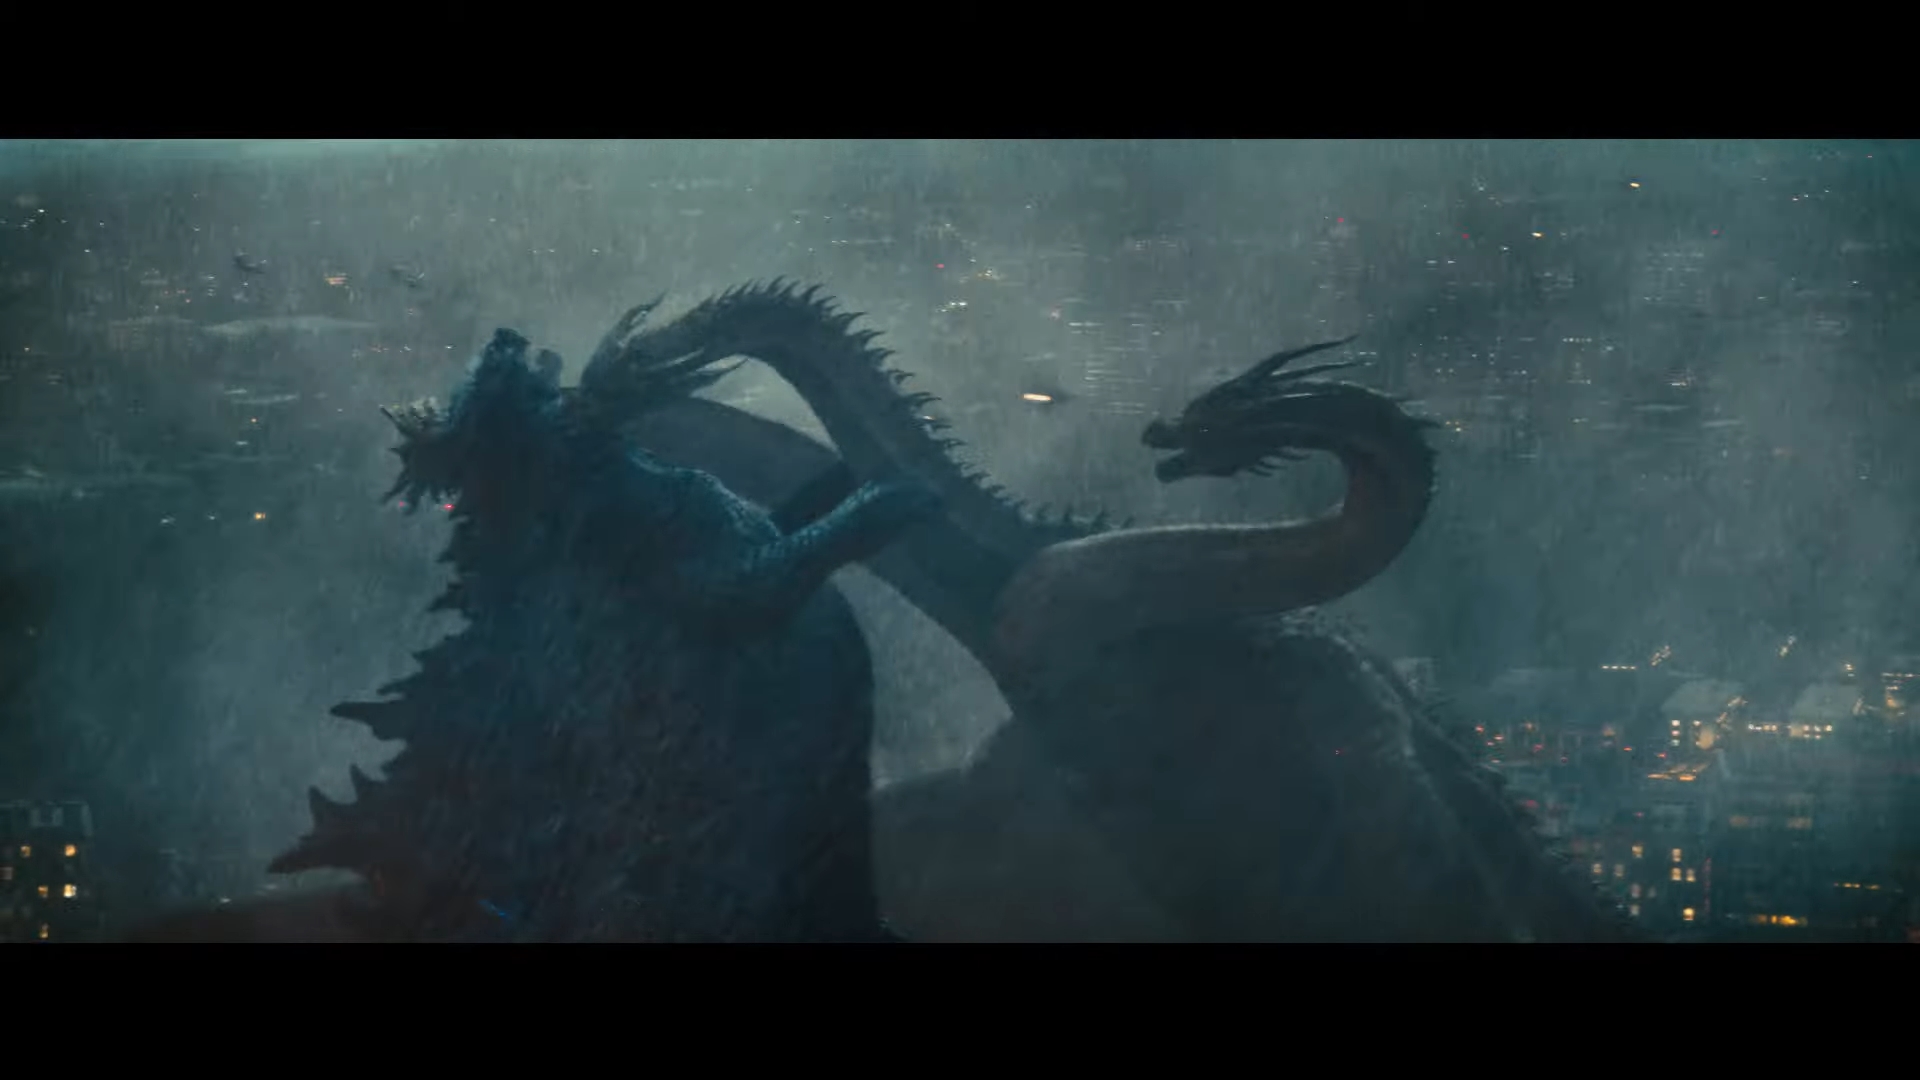 Phim Godzilla: King of the Monsters, đối mặt Quái vật 3 đầu King Ghidorah, Godzilla liệu có cửa thắng?